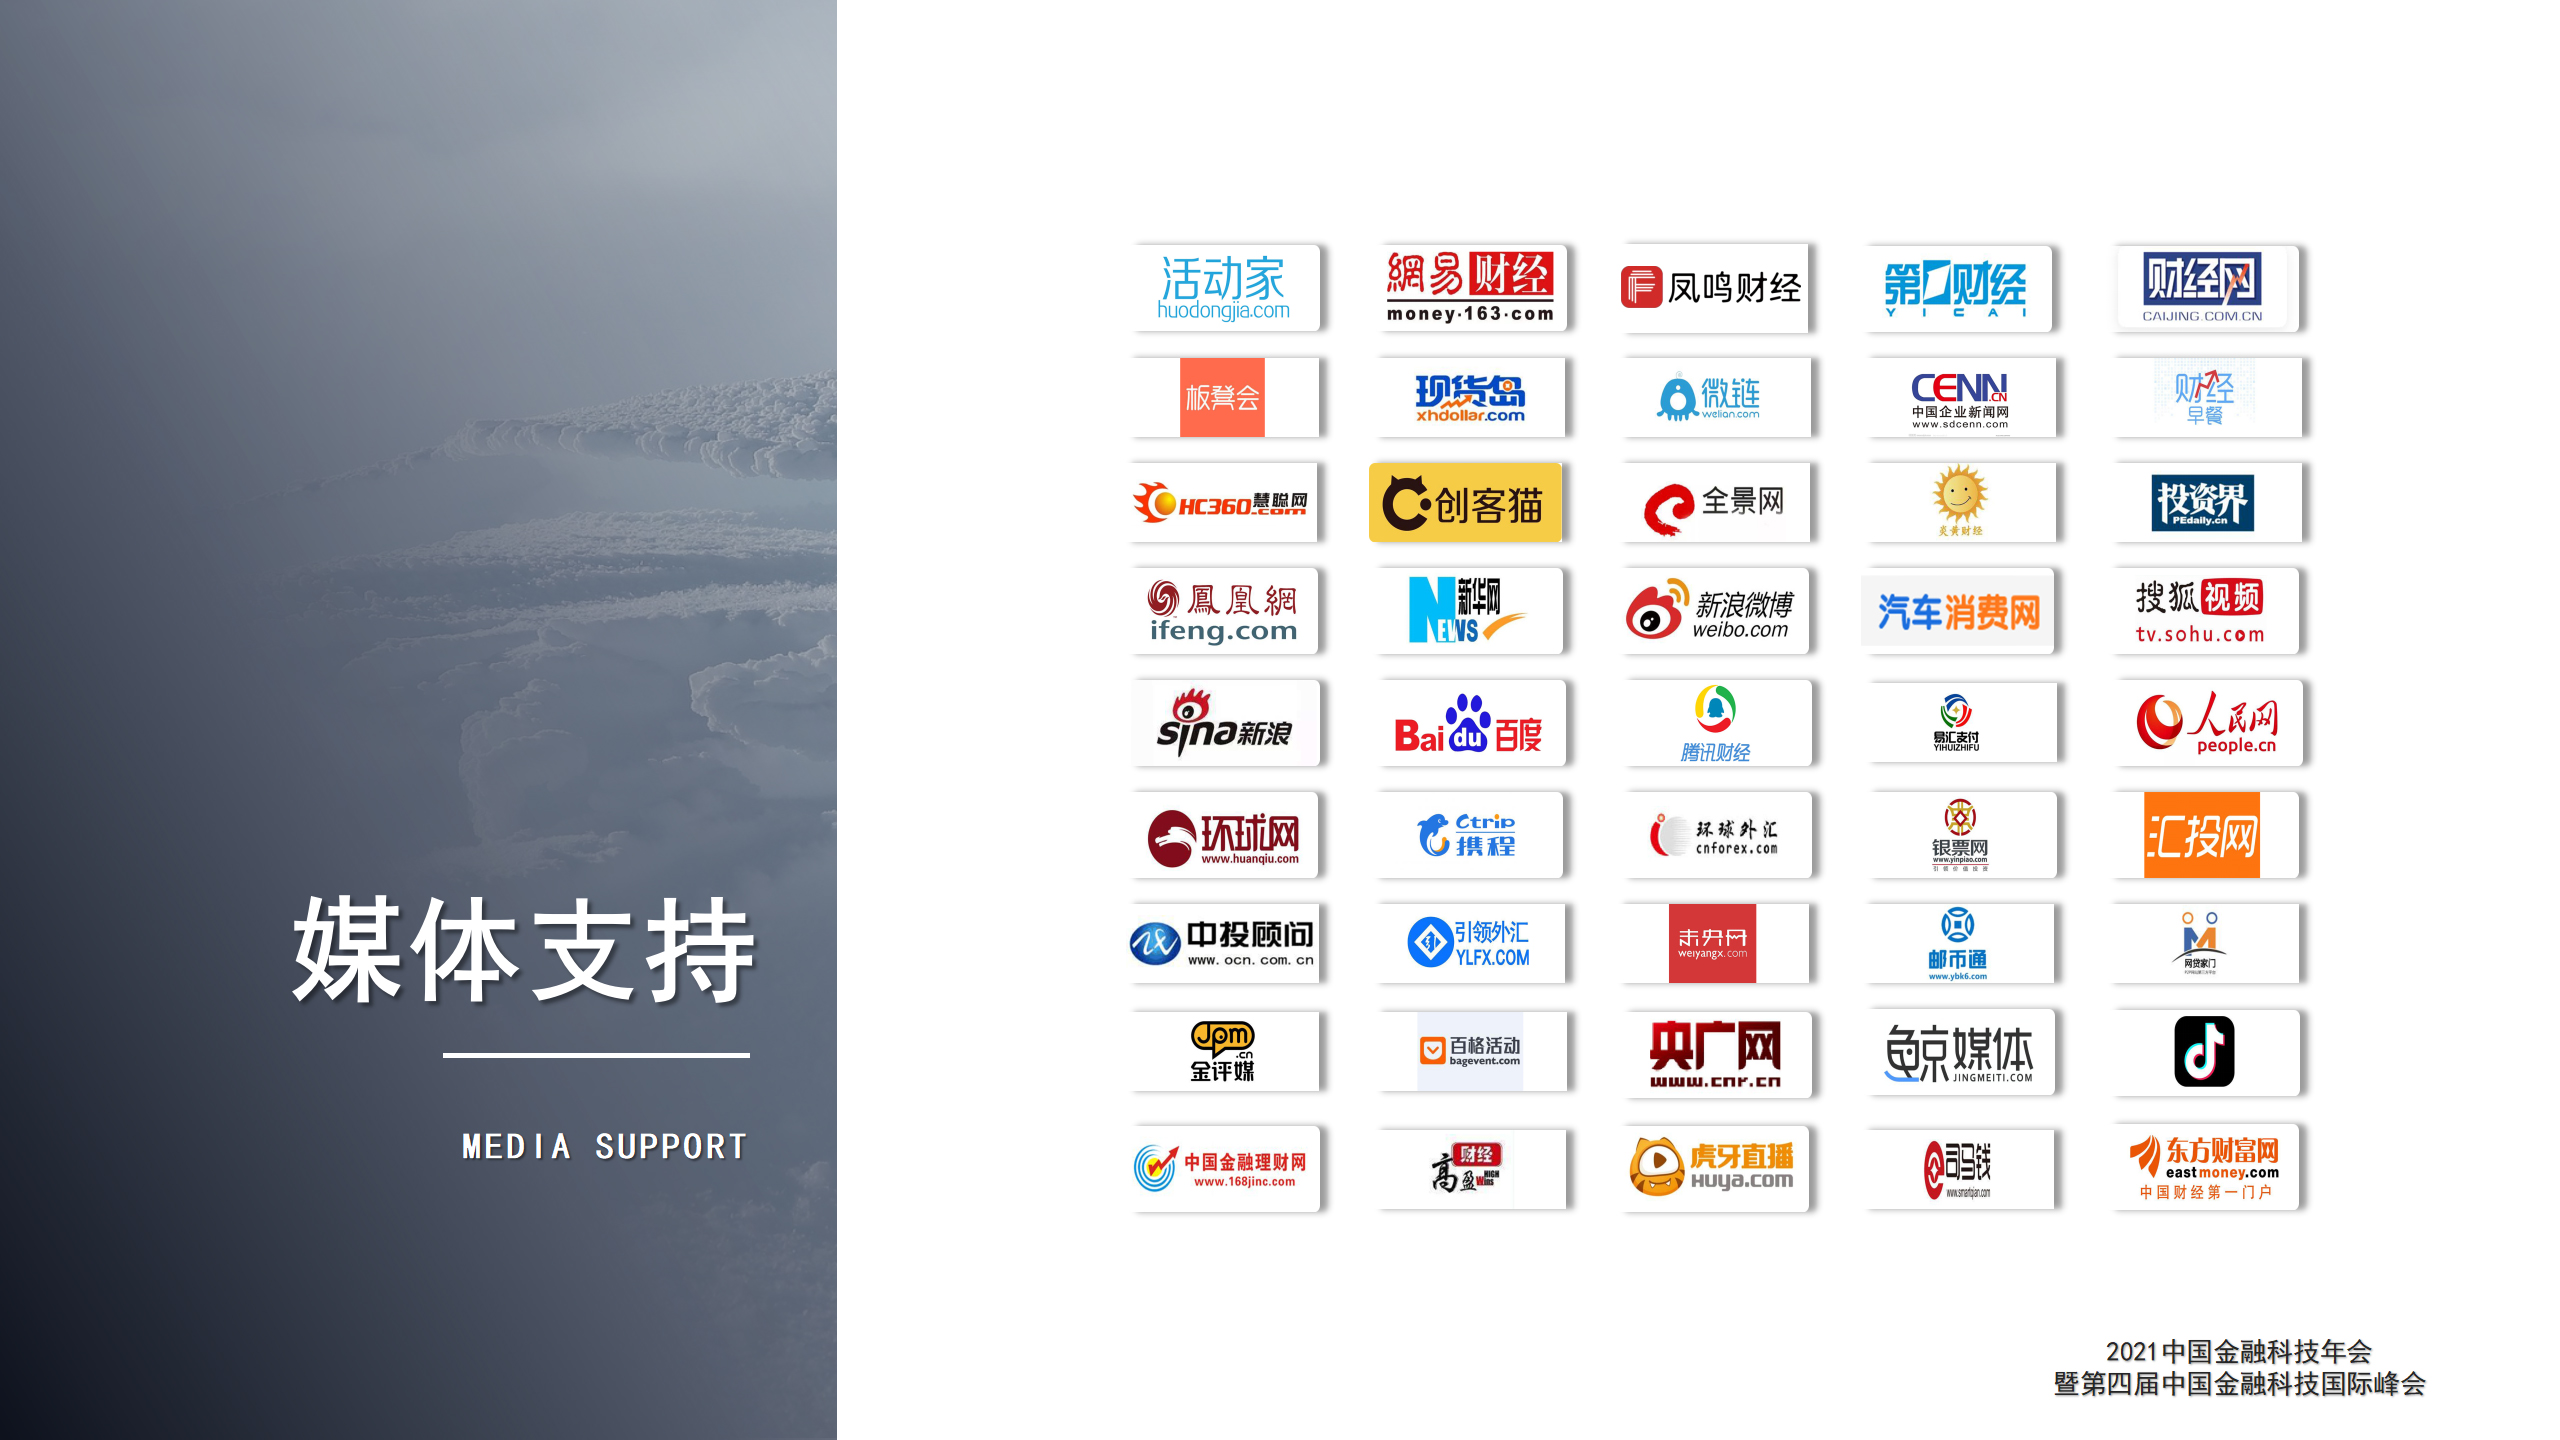 2021中國金融科技年會暨第四屆中國金融科技國際峰會